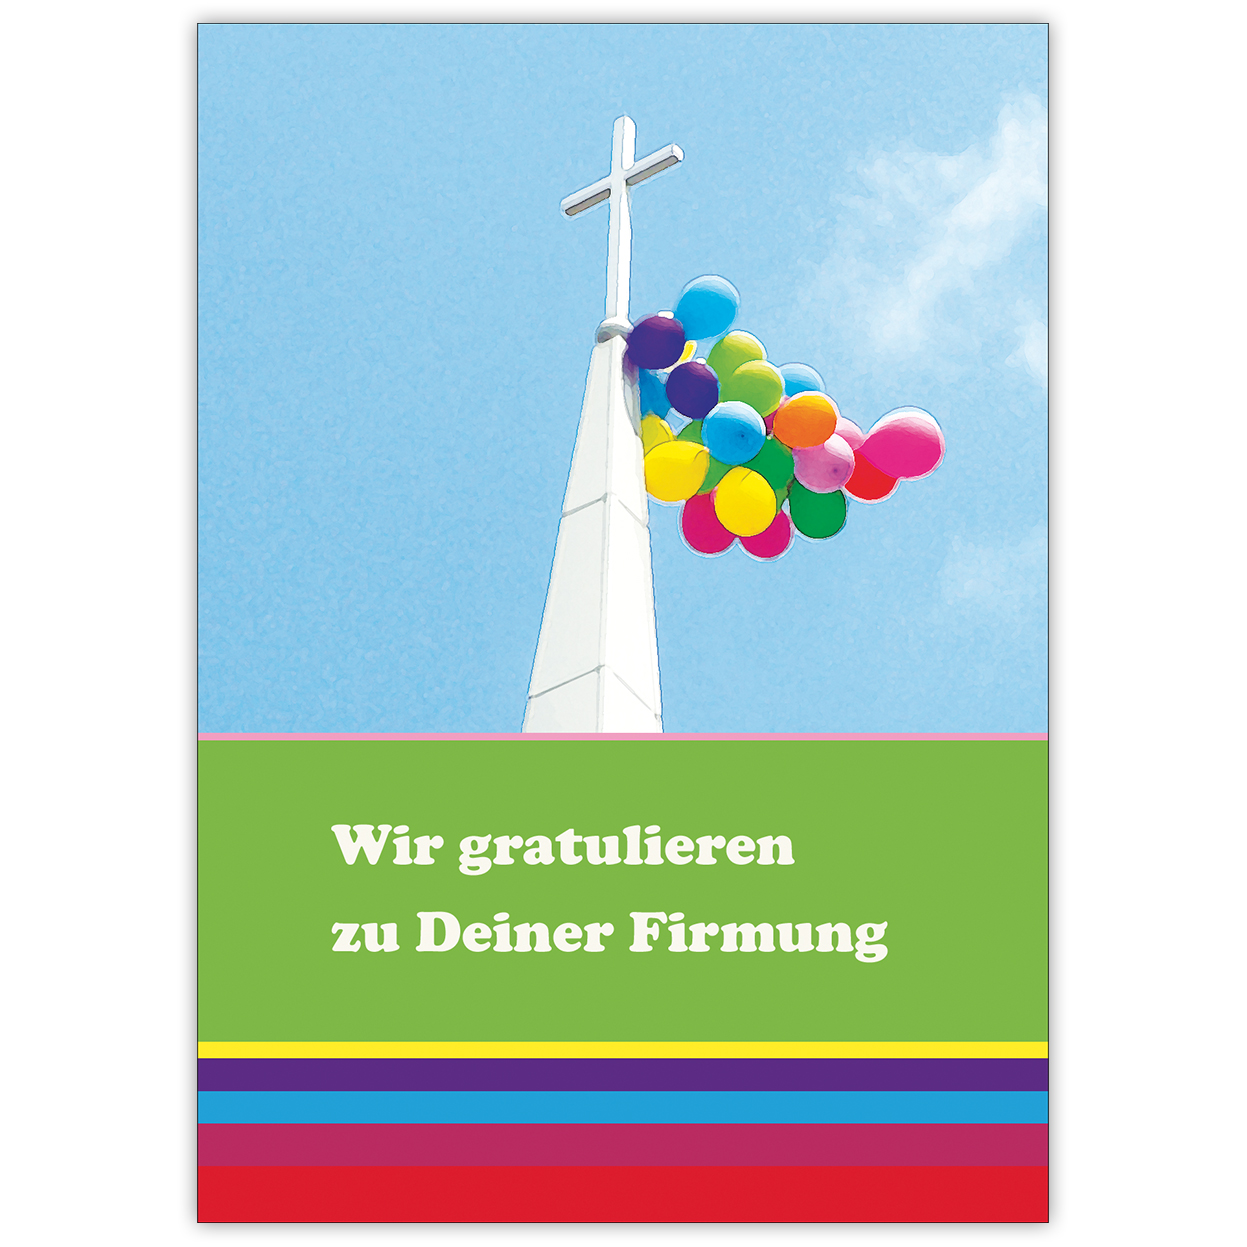 Frohliche Bunter Gluckwunsch Zur Firmung Mit Kreuz Und Luftballons Kartenkaufrausch De